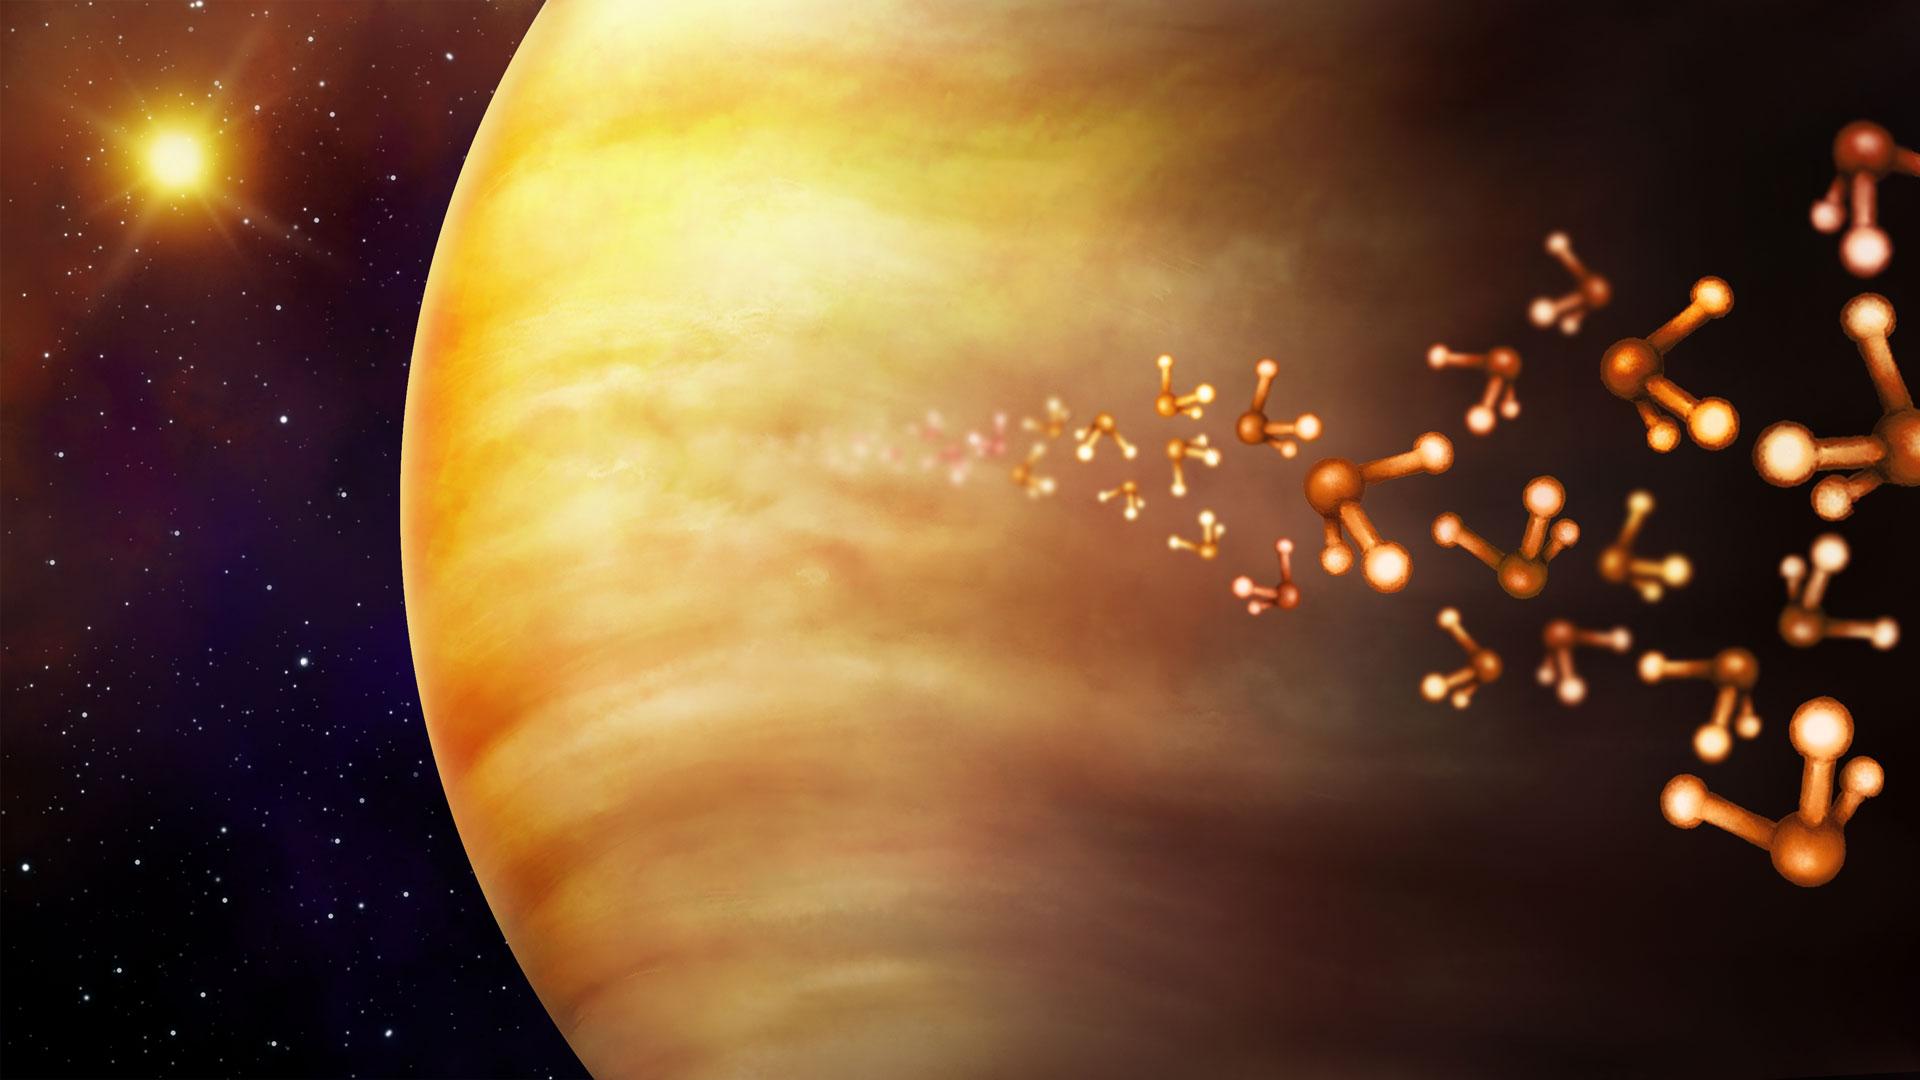 Venus' Atmosphere Is Very Dense